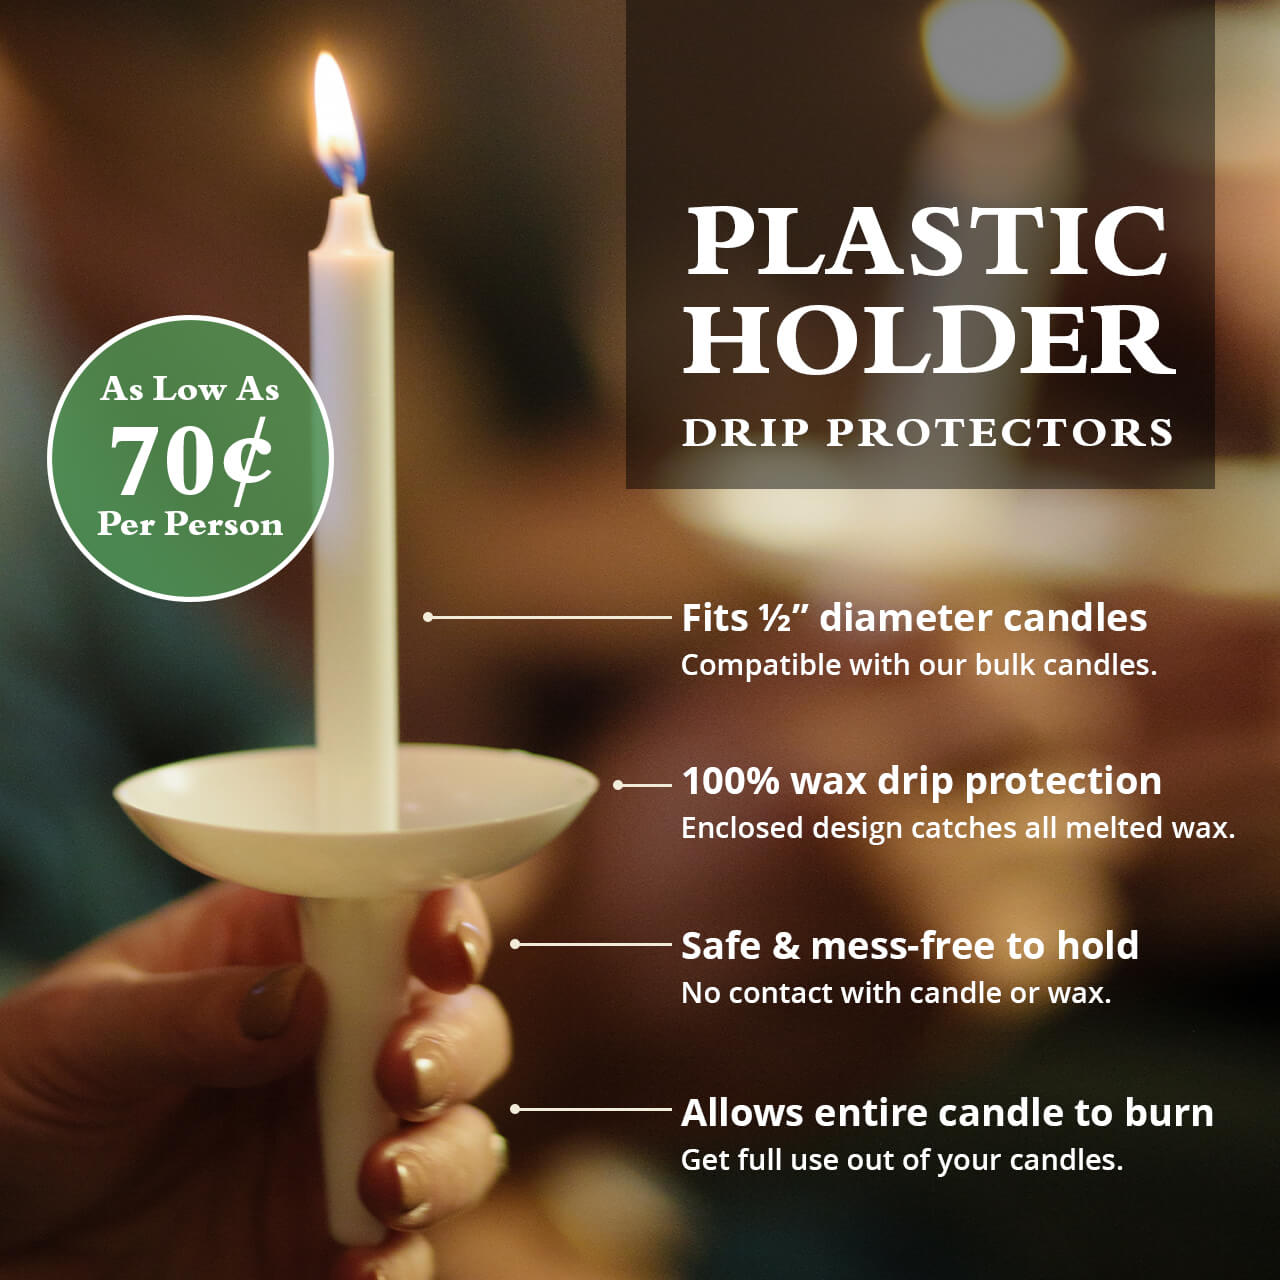 Plastic Holder Drip Protectors